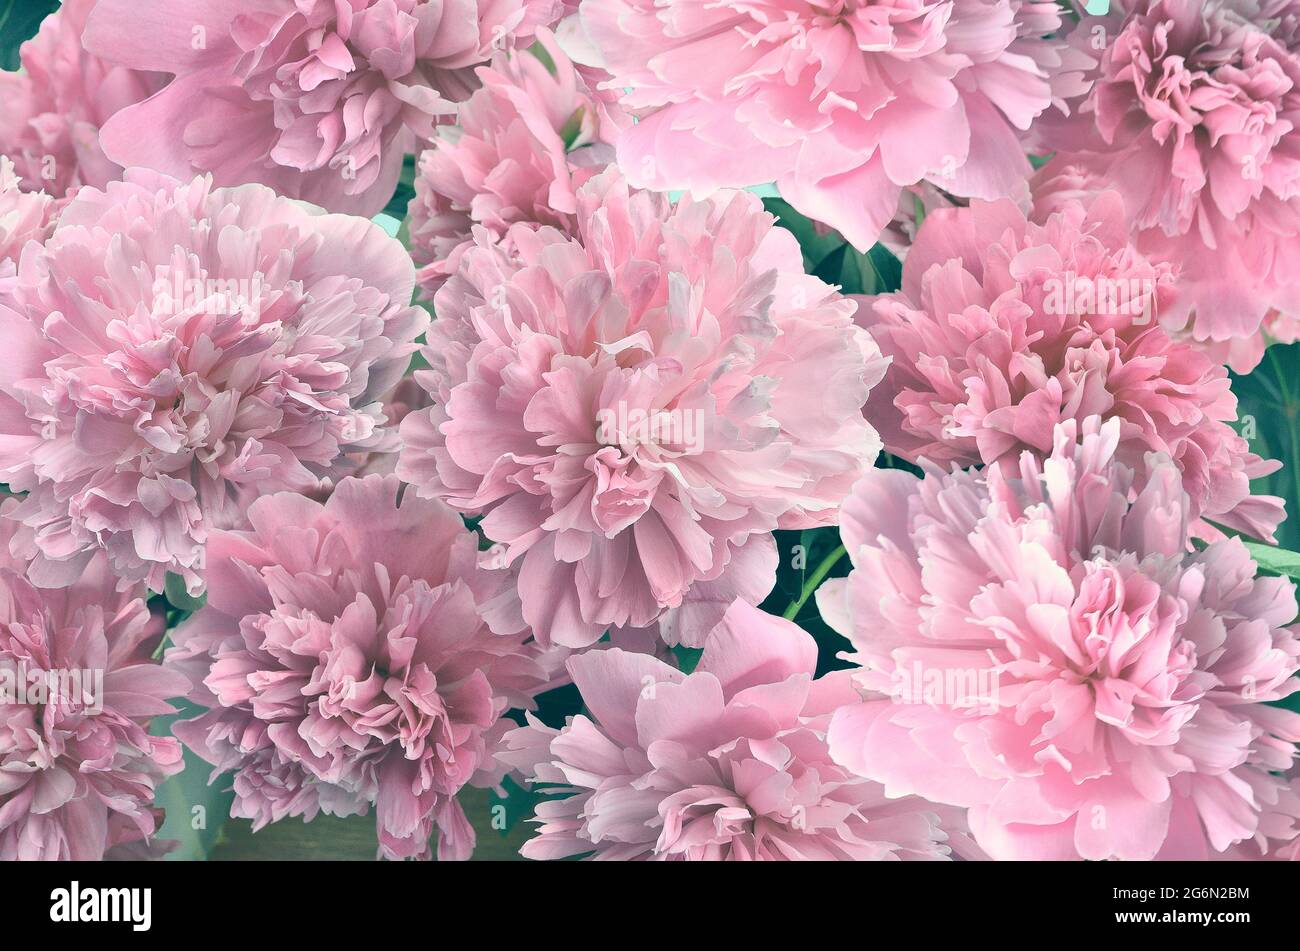 Blass rosa flauschige Pfingstrosen Blumen - florale festliche natürliche Hintergrund. Zarte Blütenblätter im Vintage-Ton. Grußkarte oder Einladung zu jeder festlichen Stockfoto